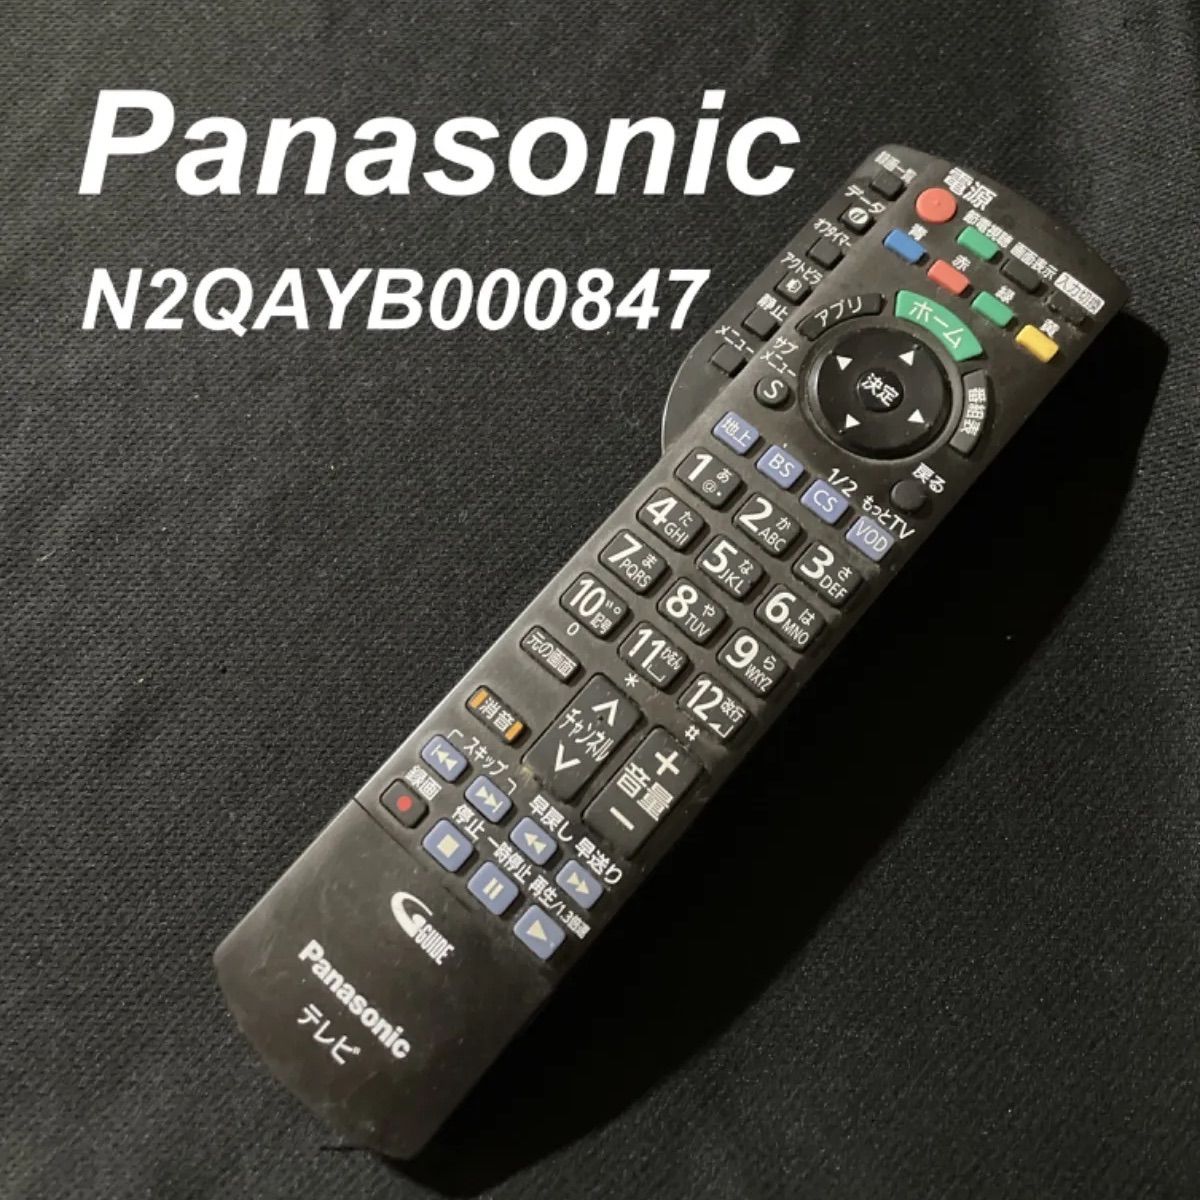 パナソニック Panasonic N2QAYB000847 リモコン テレビ 液晶 赤外線チェック済 清掃 除菌済み 中古 RC2582 - メルカリ